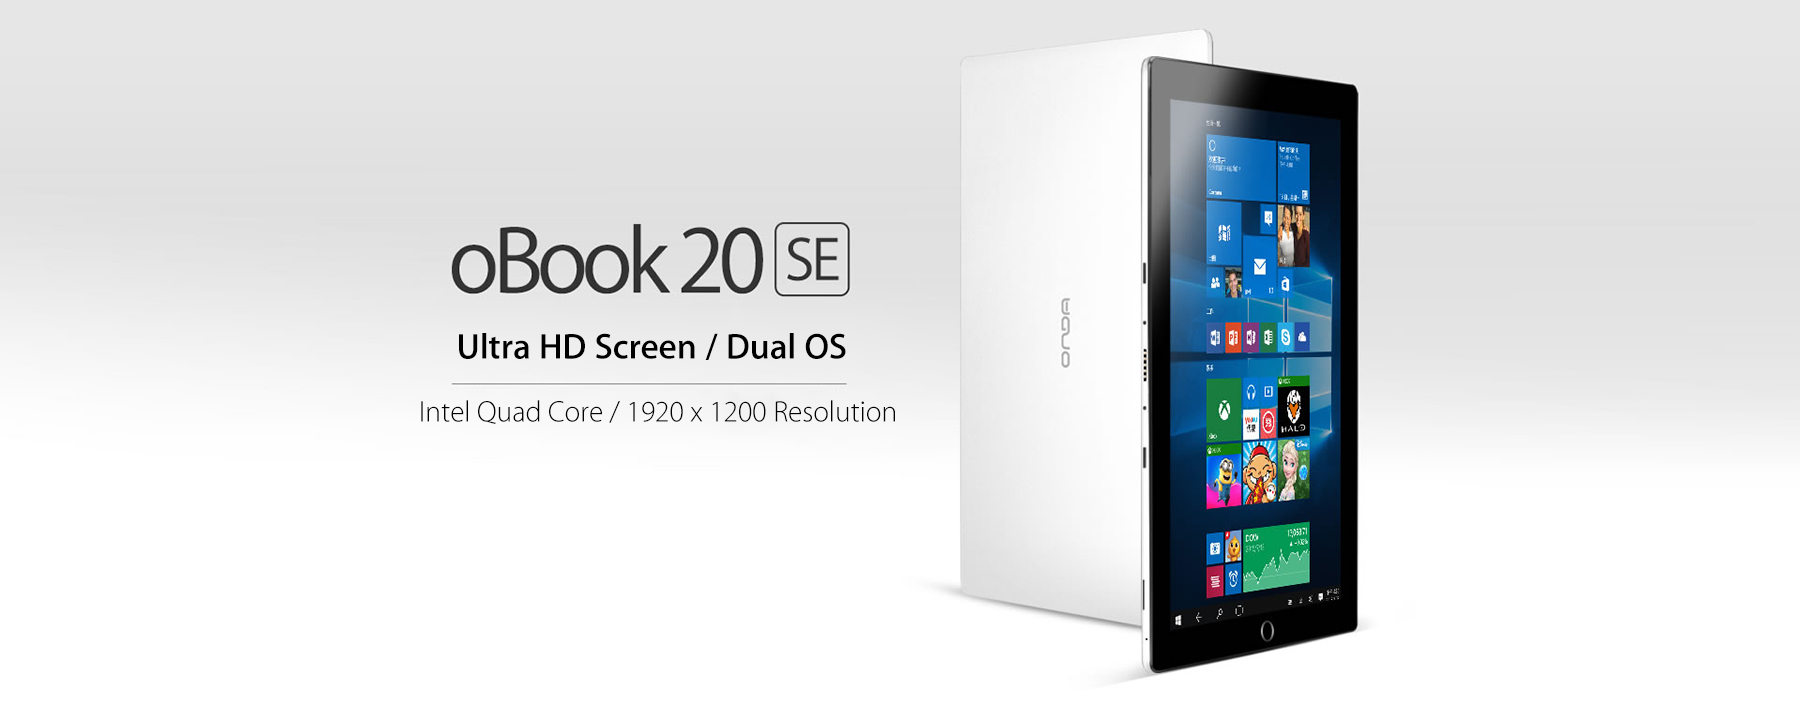 Onda Obook 20 SE, una Tablet con Windows 10 y Android 5.1